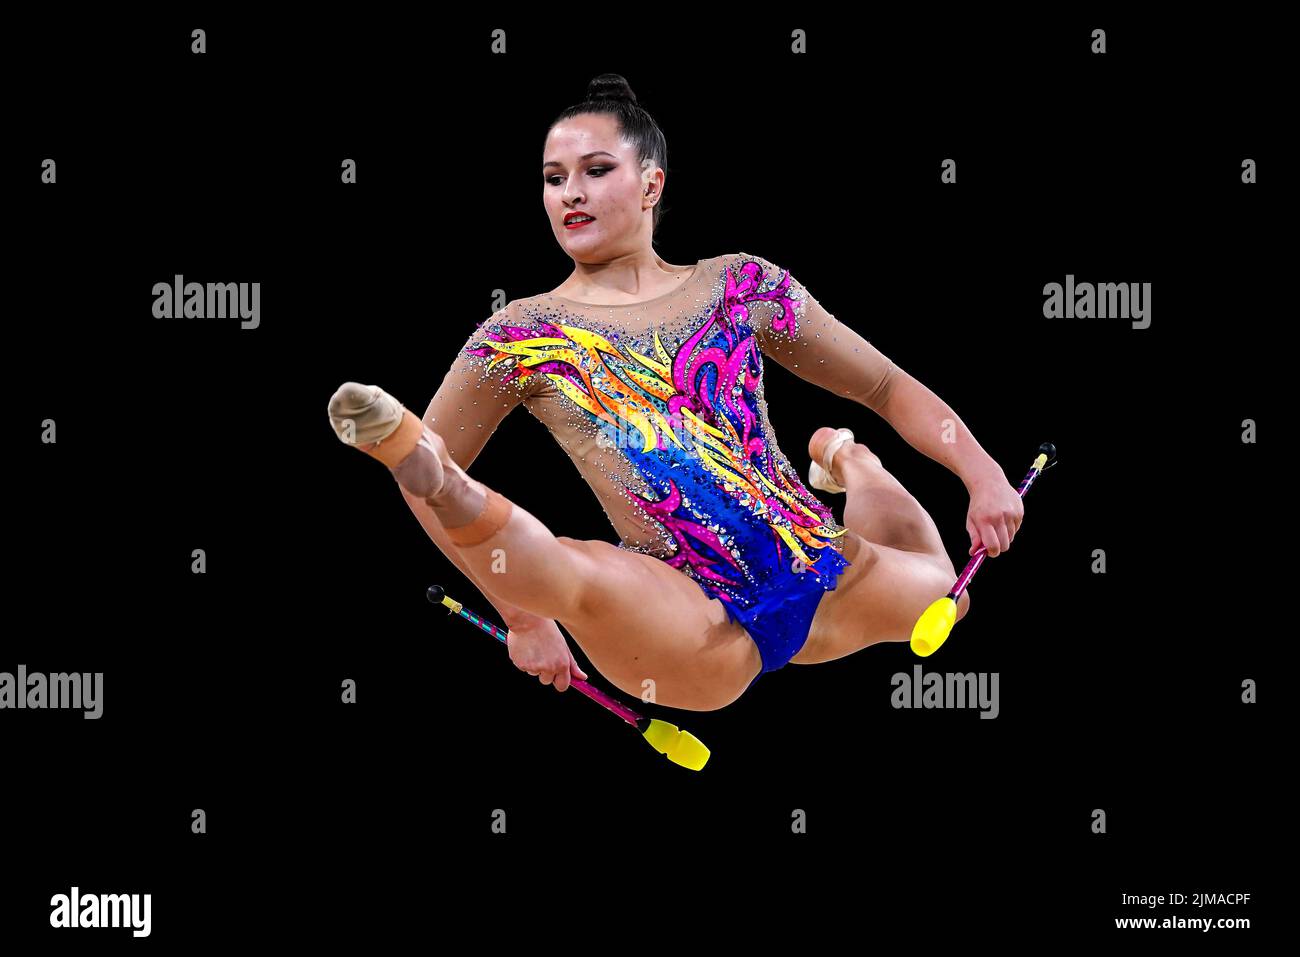 Die Engländerin Alice Leaper beim rhythmischen Gymnastik-Einzel-Allaround-Finale in der Arena Birmingham am achten Tag der Commonwealth Games 2022 in Birmingham. Bilddatum: Freitag, 5. August 2022. Stockfoto